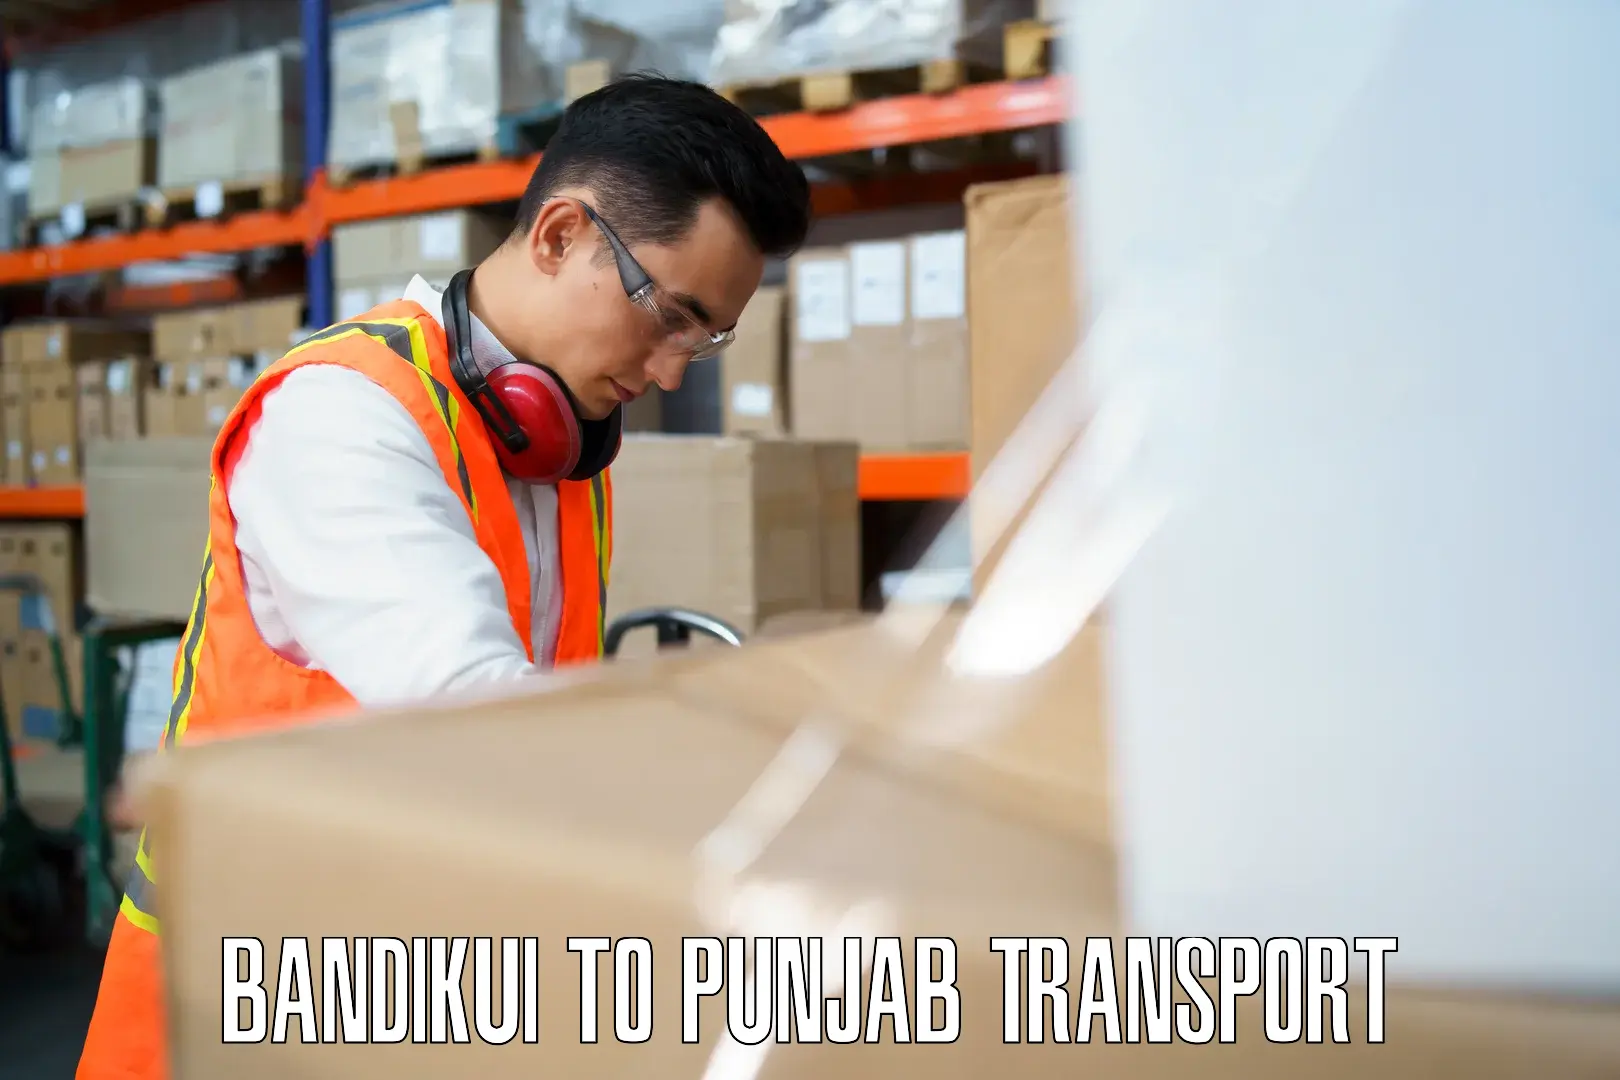 Luggage transport services Bandikui to Punjab